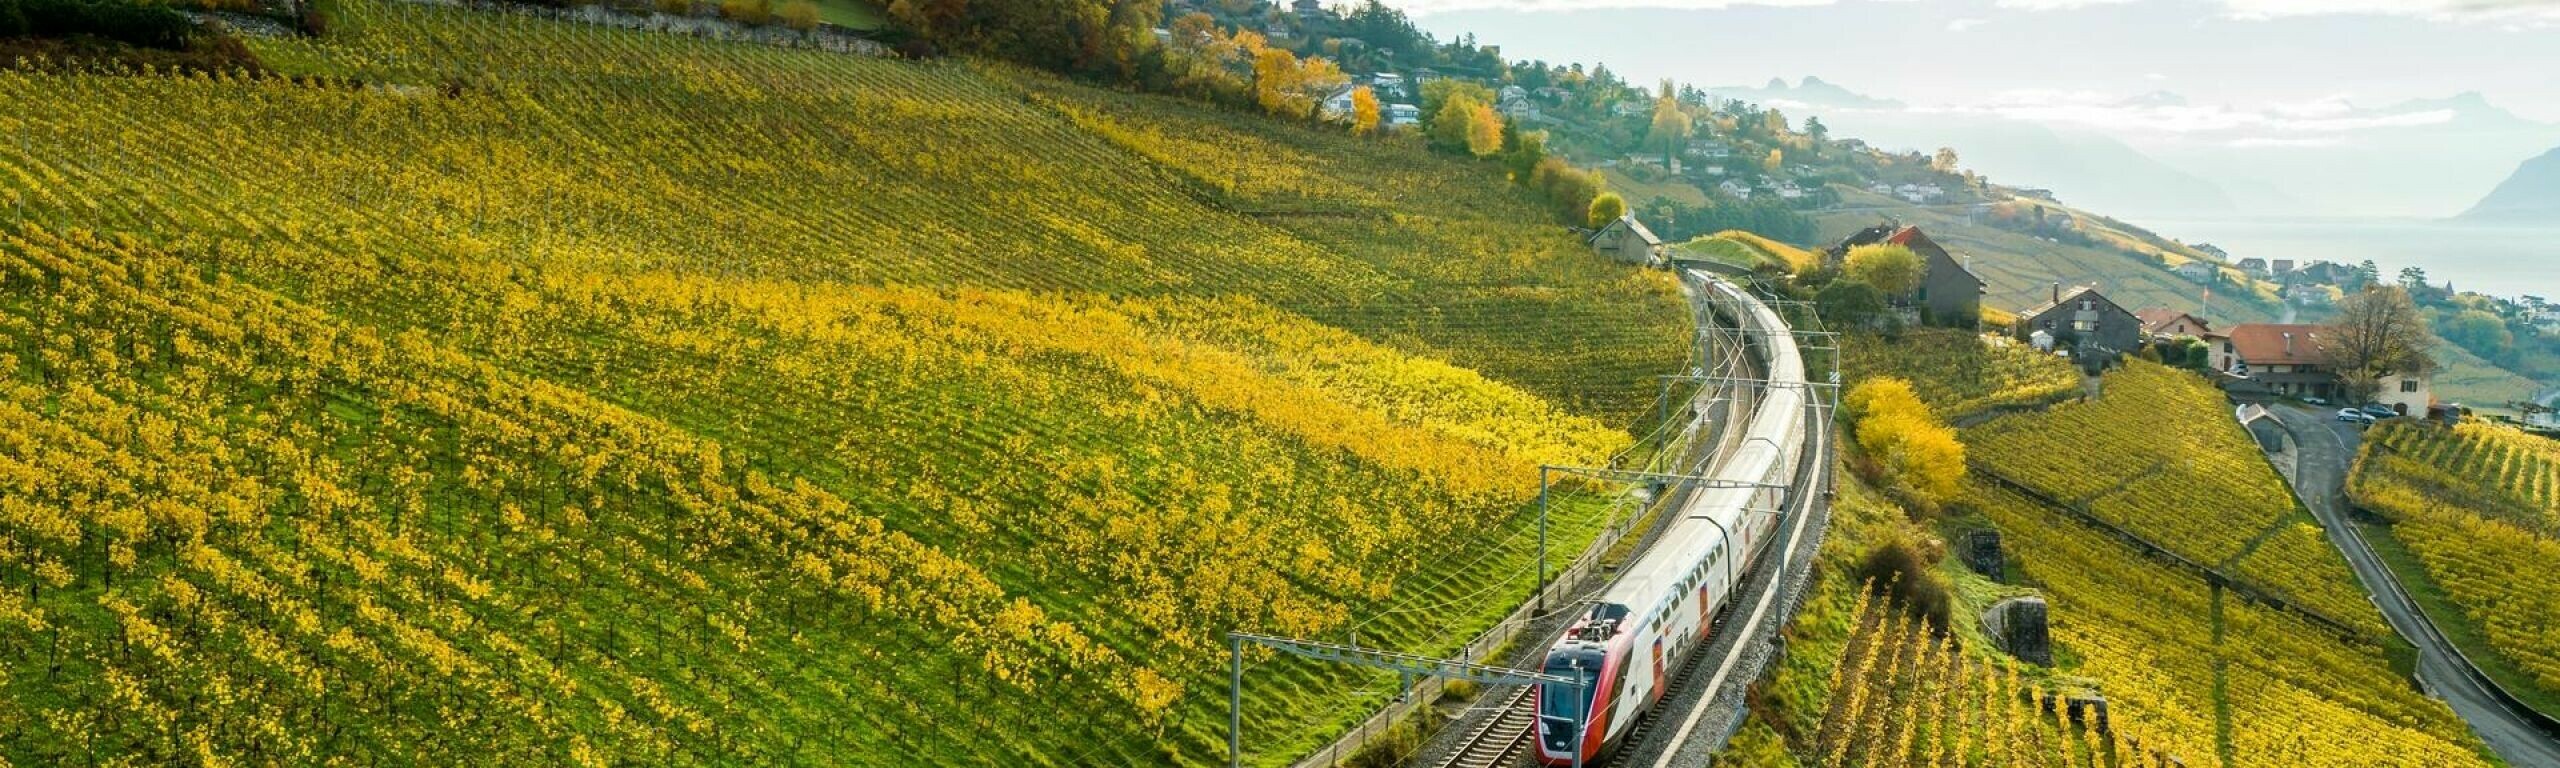 Un train duplex circule dans les vignes du Lavaux